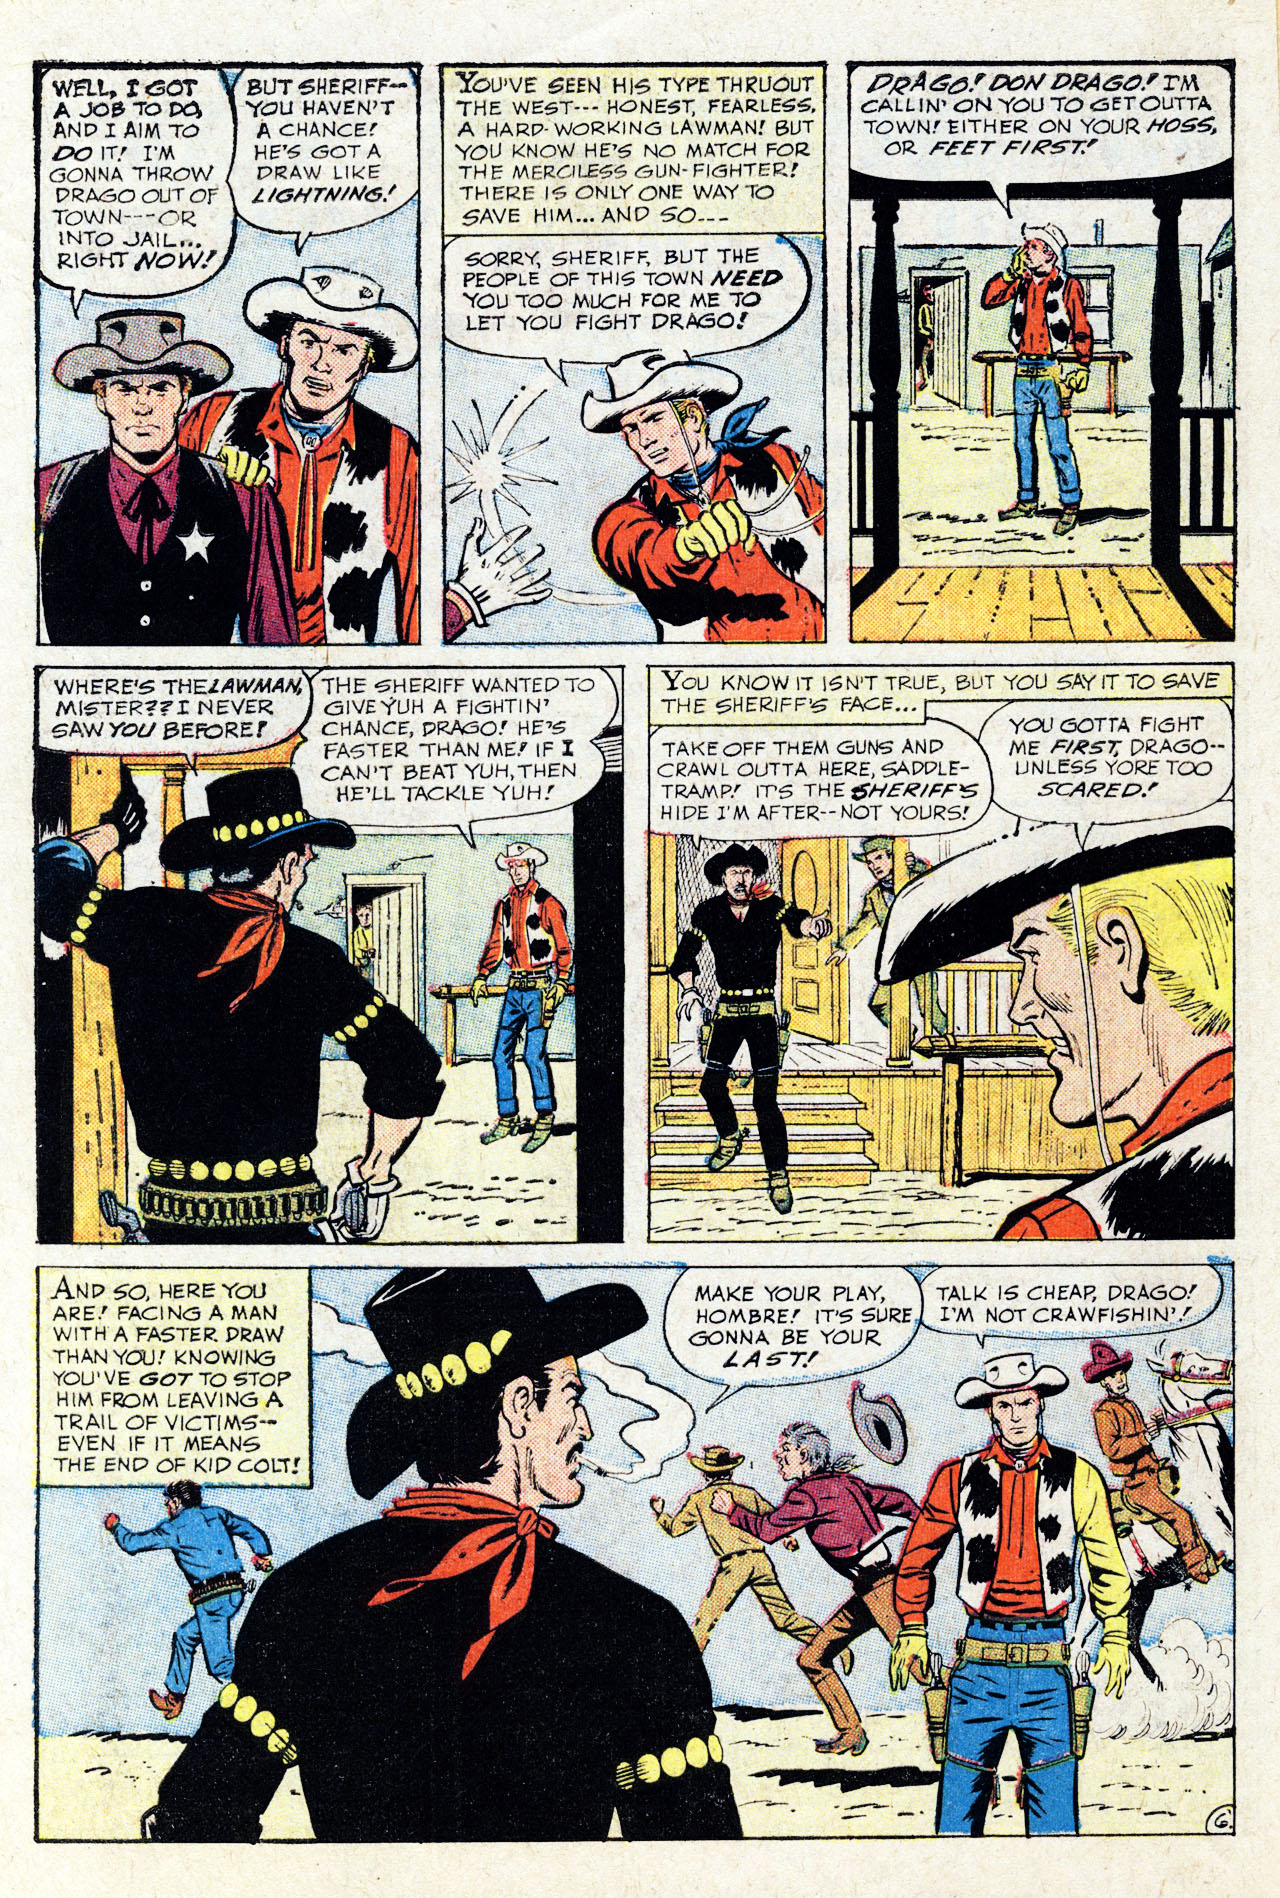 Read online Gunsmoke Western comic -  Issue #77 - 10